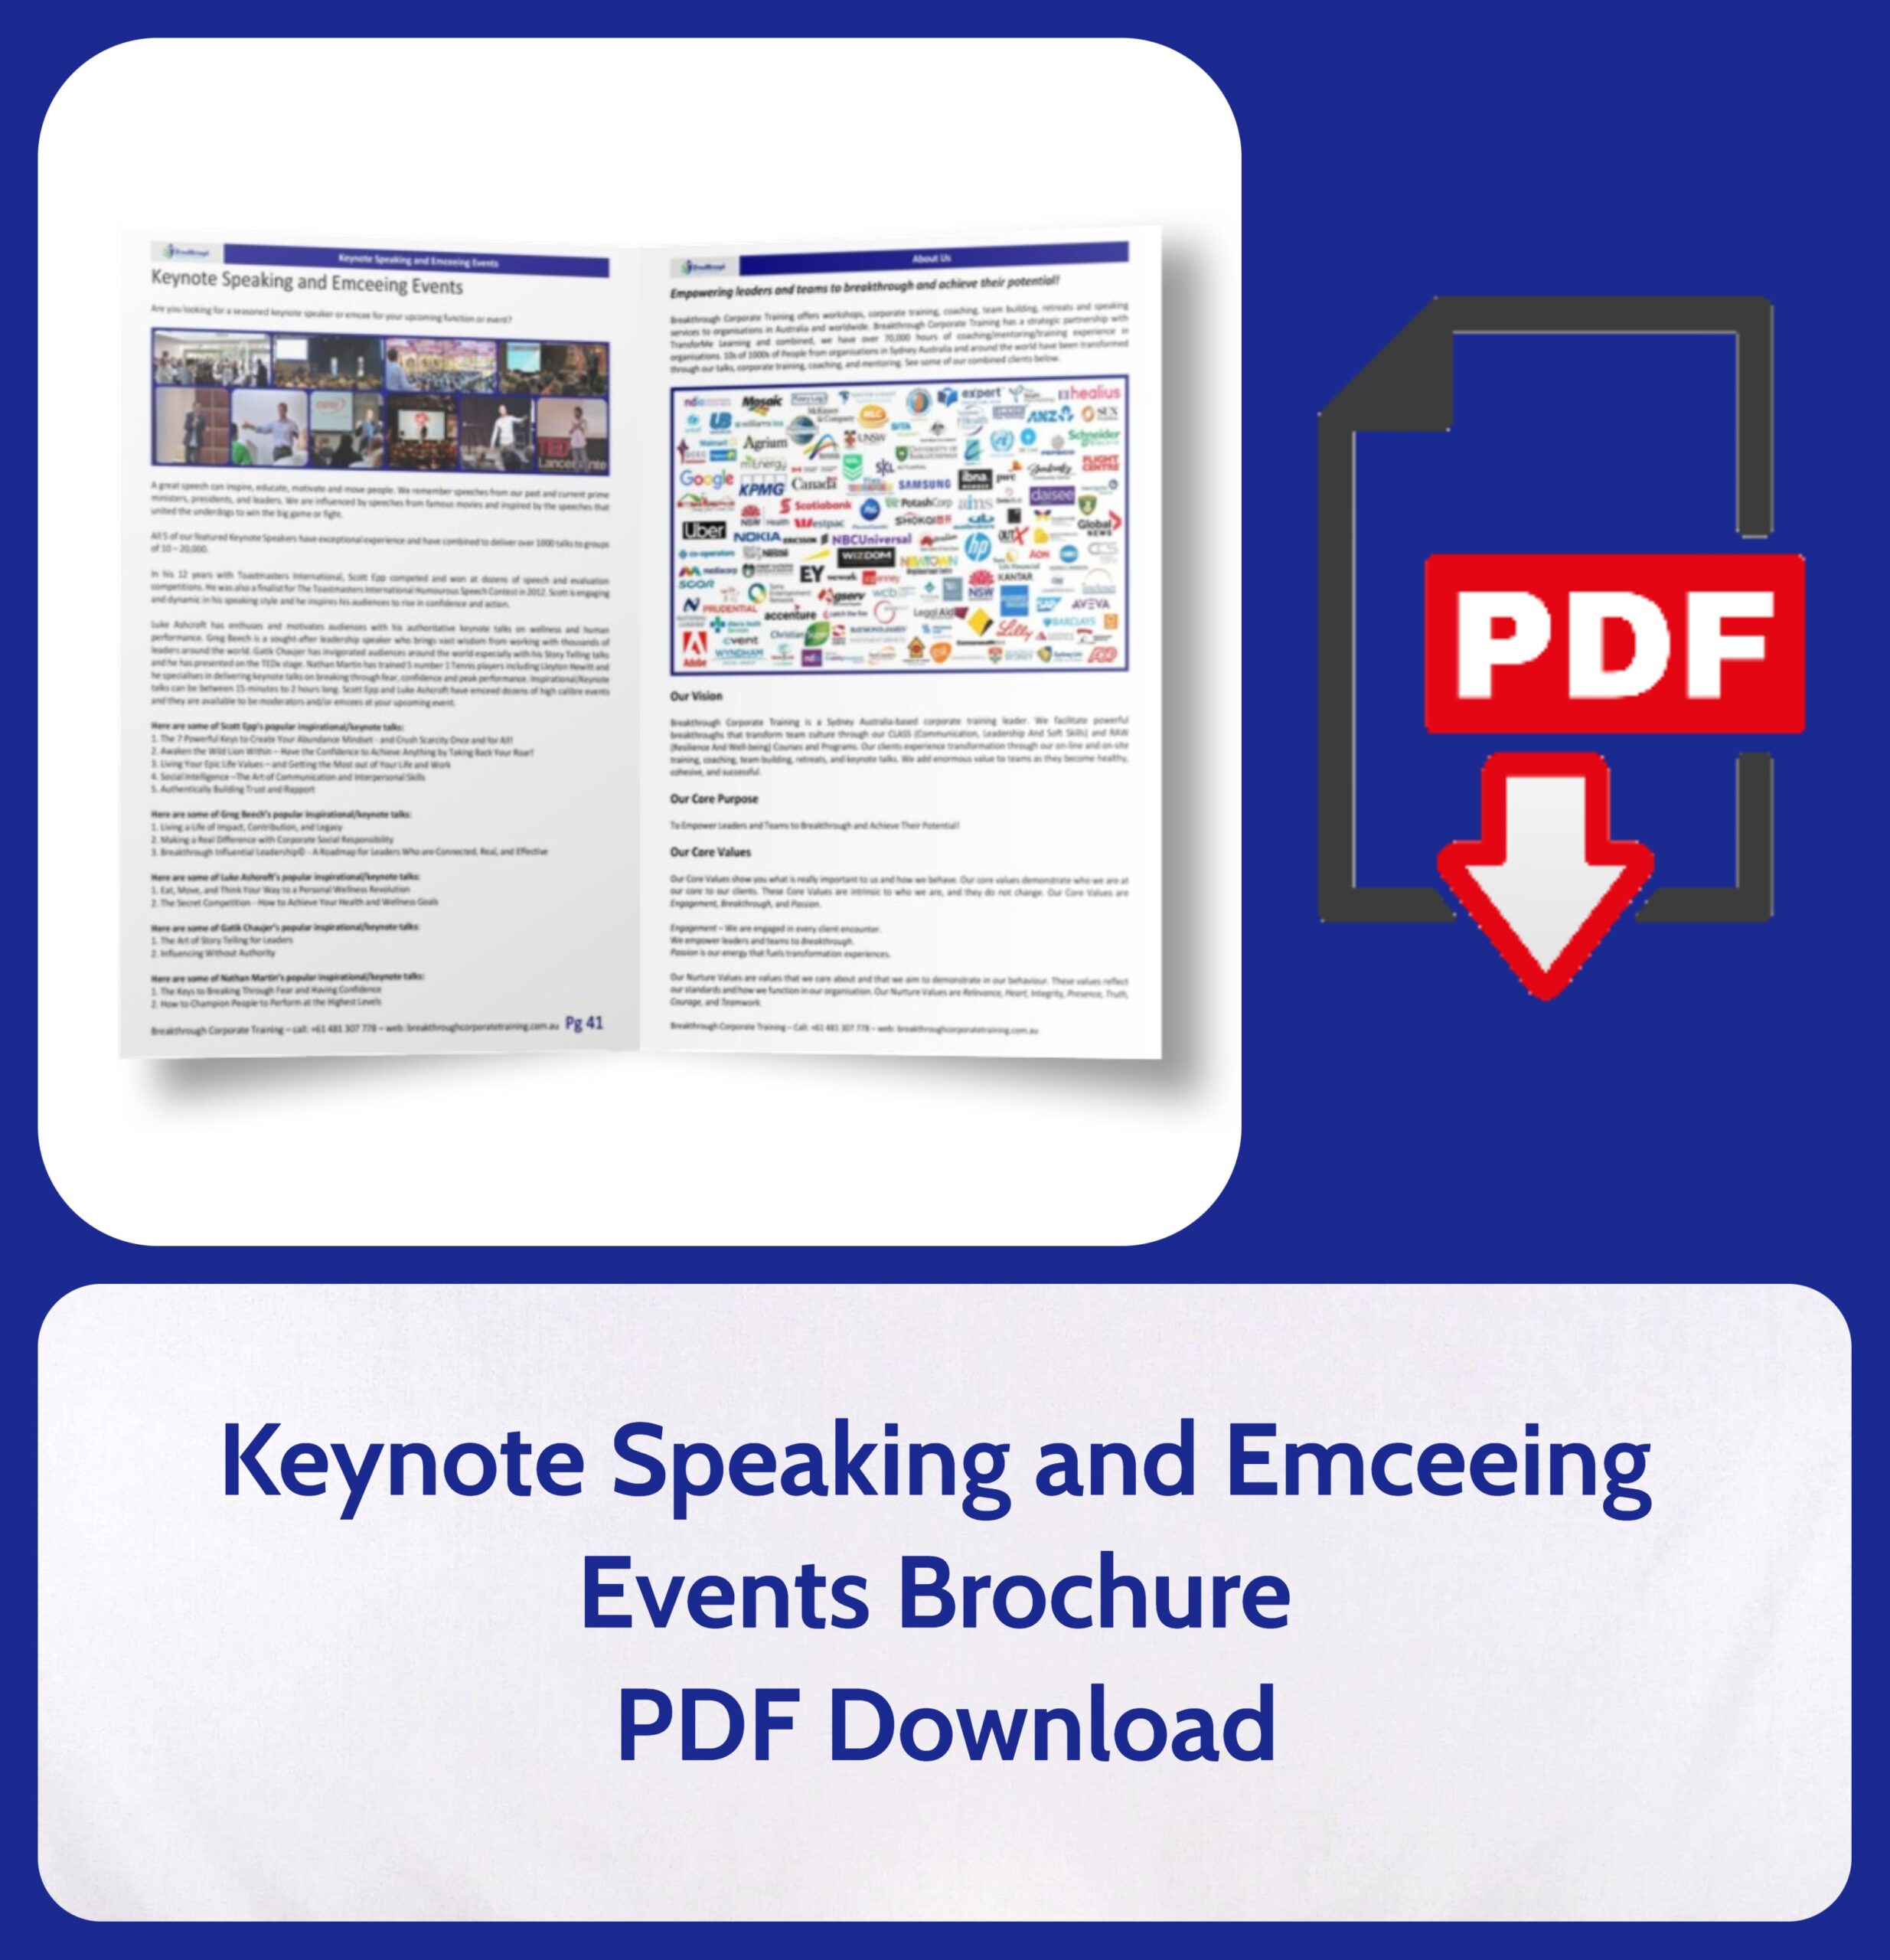 Keynote Speaking and Emceeing Events Brochure